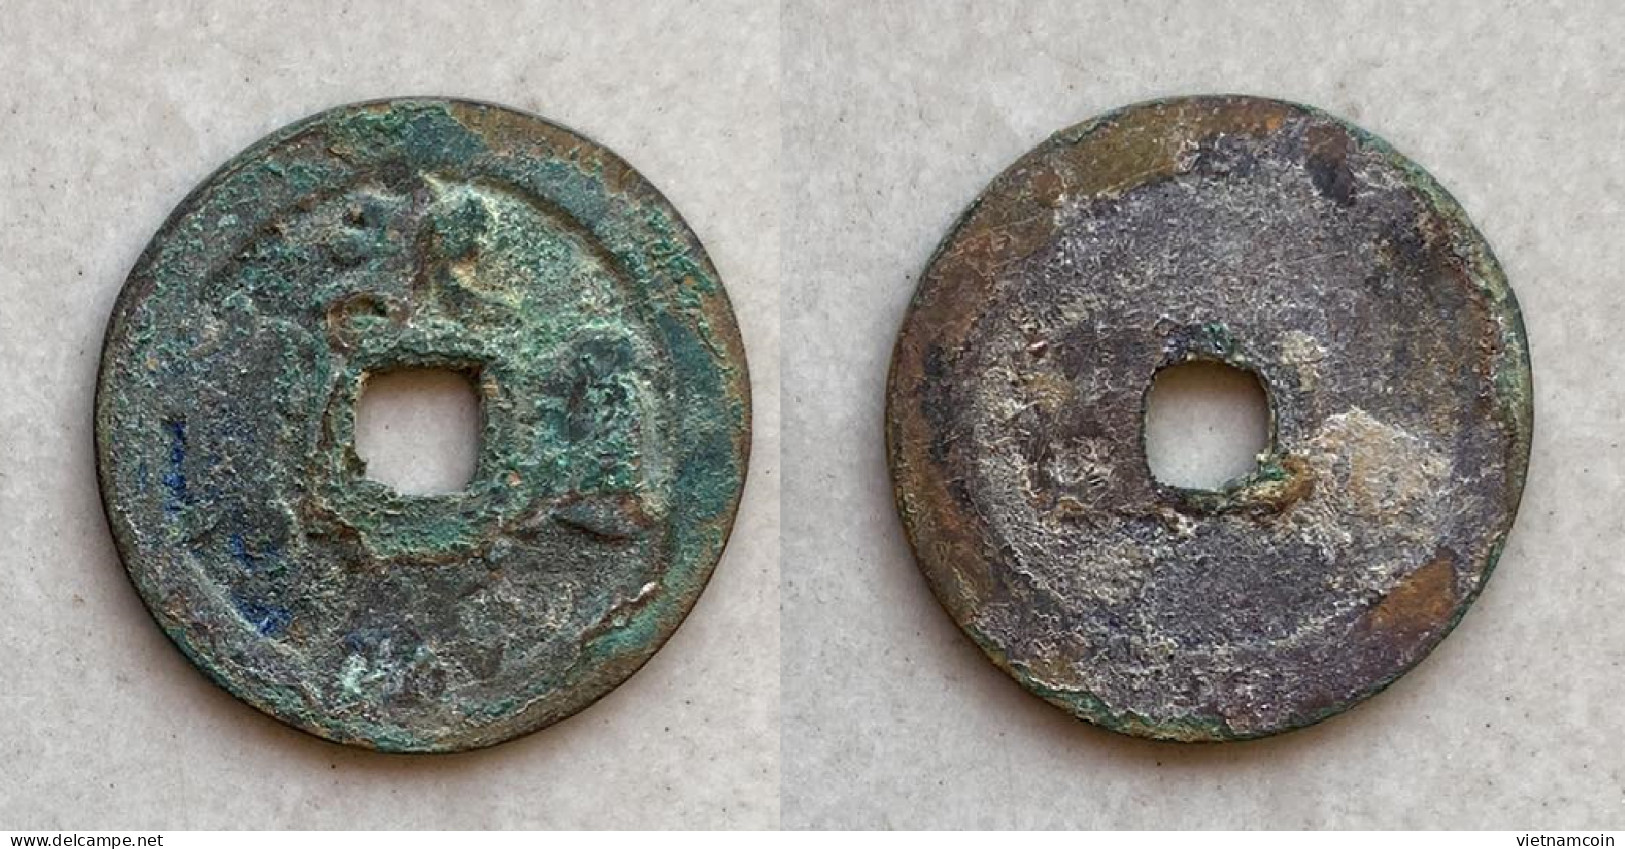 Ancient Annam Coin Vinh Thinh Thong Bao 1706-1729 - Vietnam